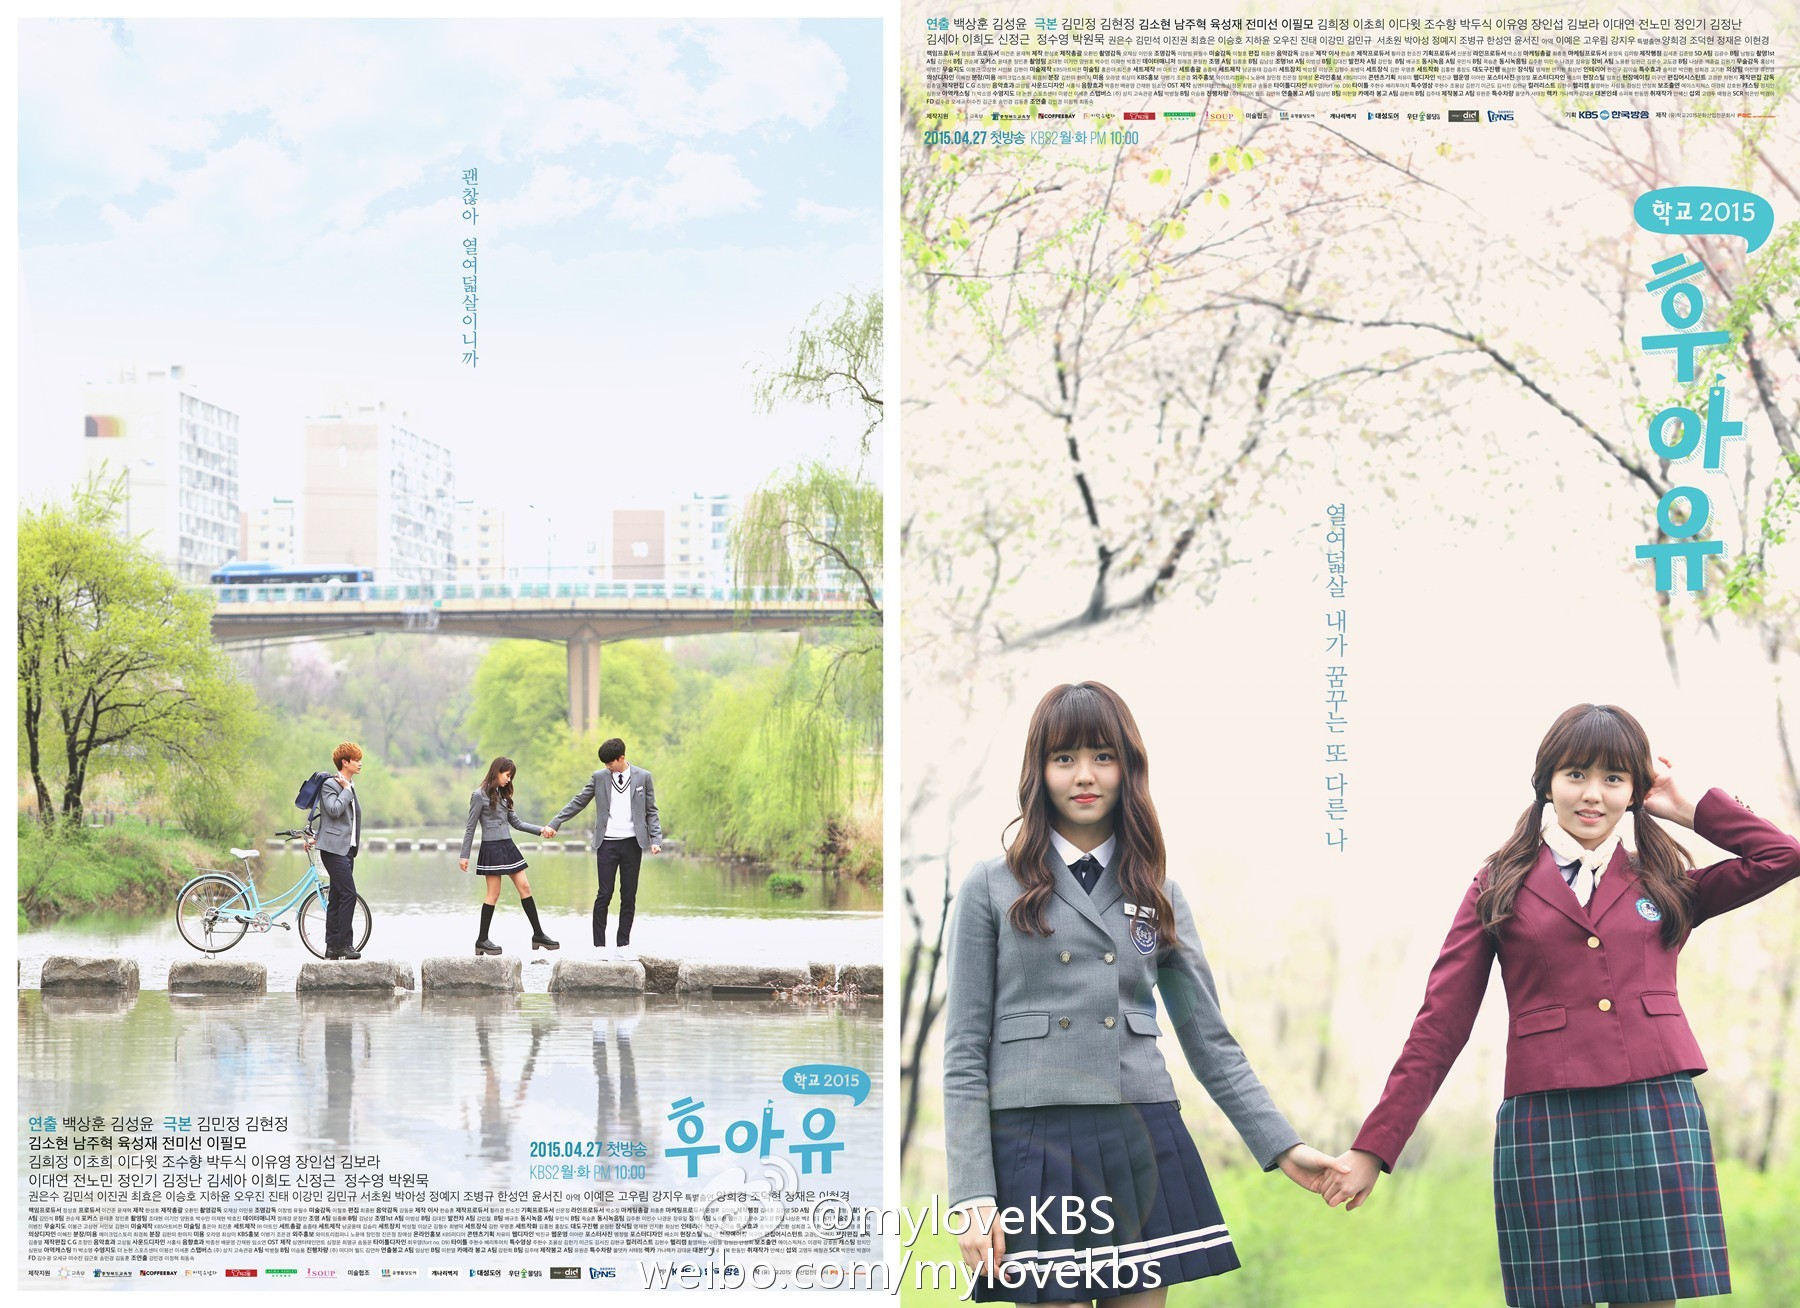 Học đường 2015/Who Are You: School 2015 là phim truyền hình Hàn Quốc 2015 với sự tham gia của Kim So-hyun, Yook Sung-jae và Nam Joo-hyuk. Phim được phát sóng trên KBS2 từ ngày 27 tháng 4 cho đến 16 tháng 6 vào thứ hai và thứ ba lúc 21:55 gồm 16 tập.